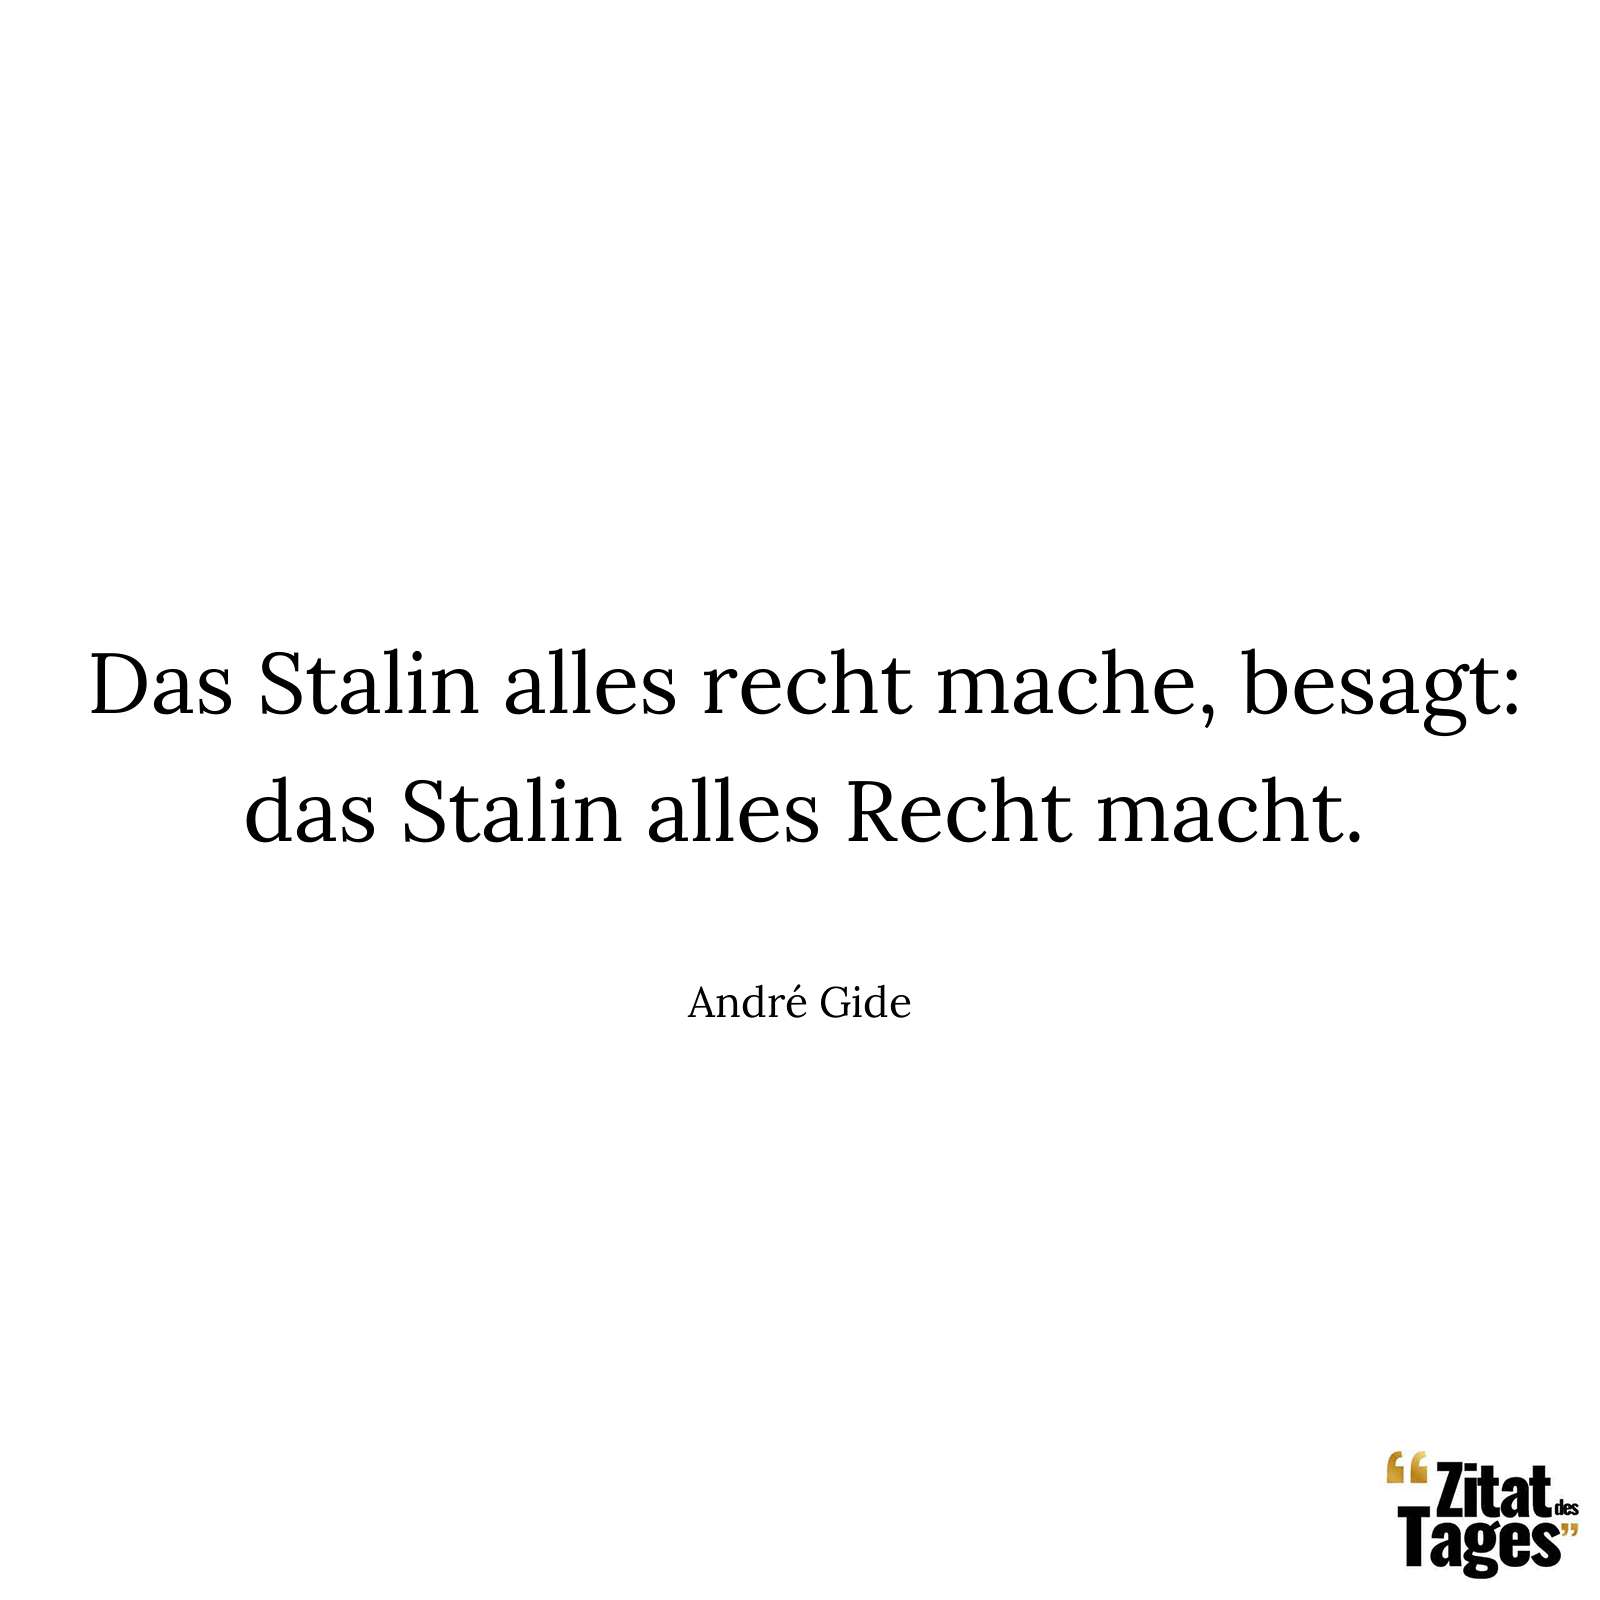 Das Stalin alles recht mache, besagt: das Stalin alles Recht macht. - André Gide